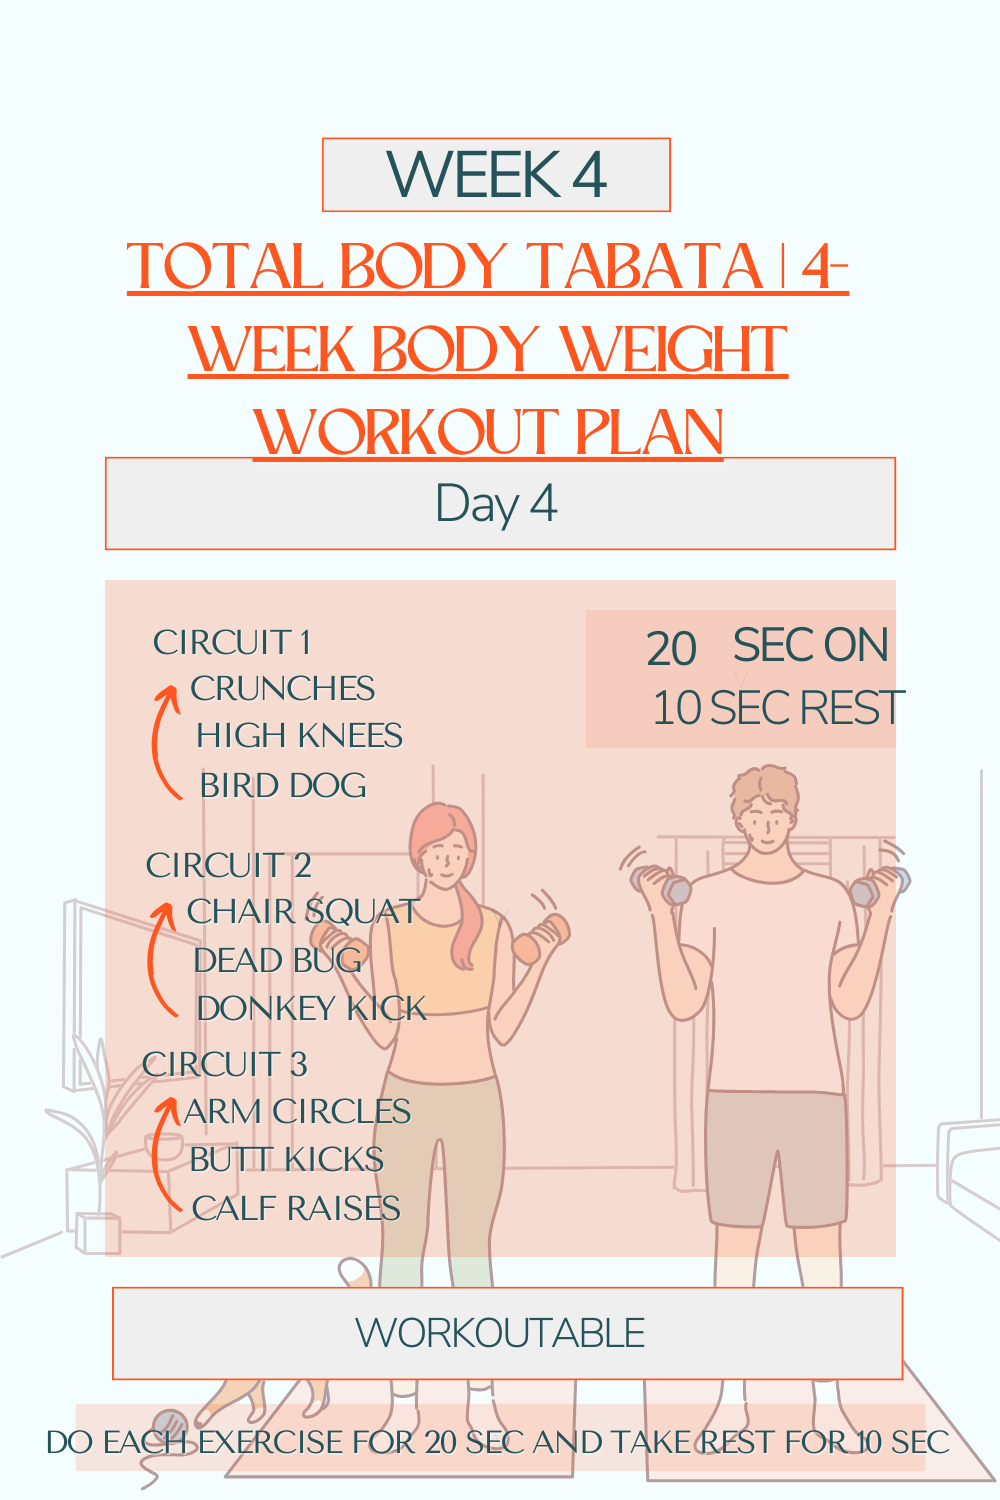 Total Body Tabata - 4-Week Body Weight Workout Plan